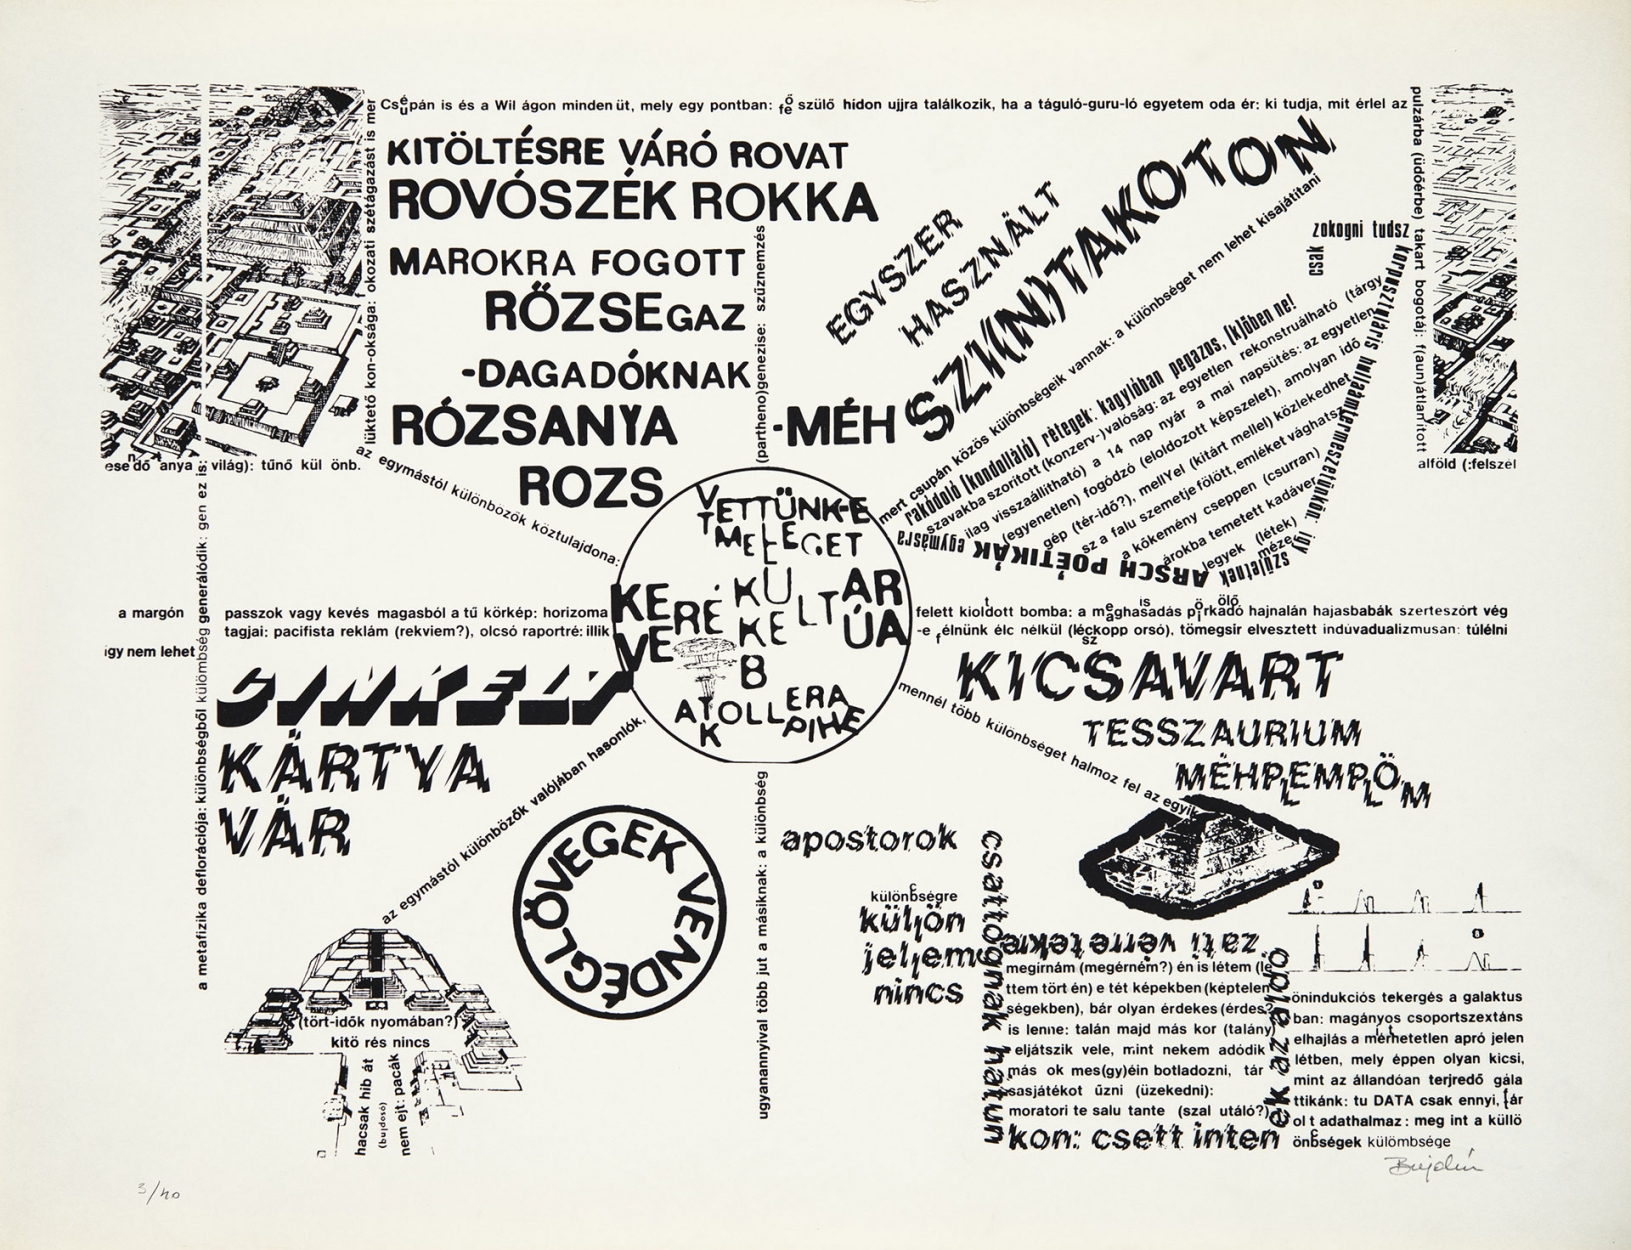 Bujdosó Alpár 1935 Cinkelt kártyavár, 1992